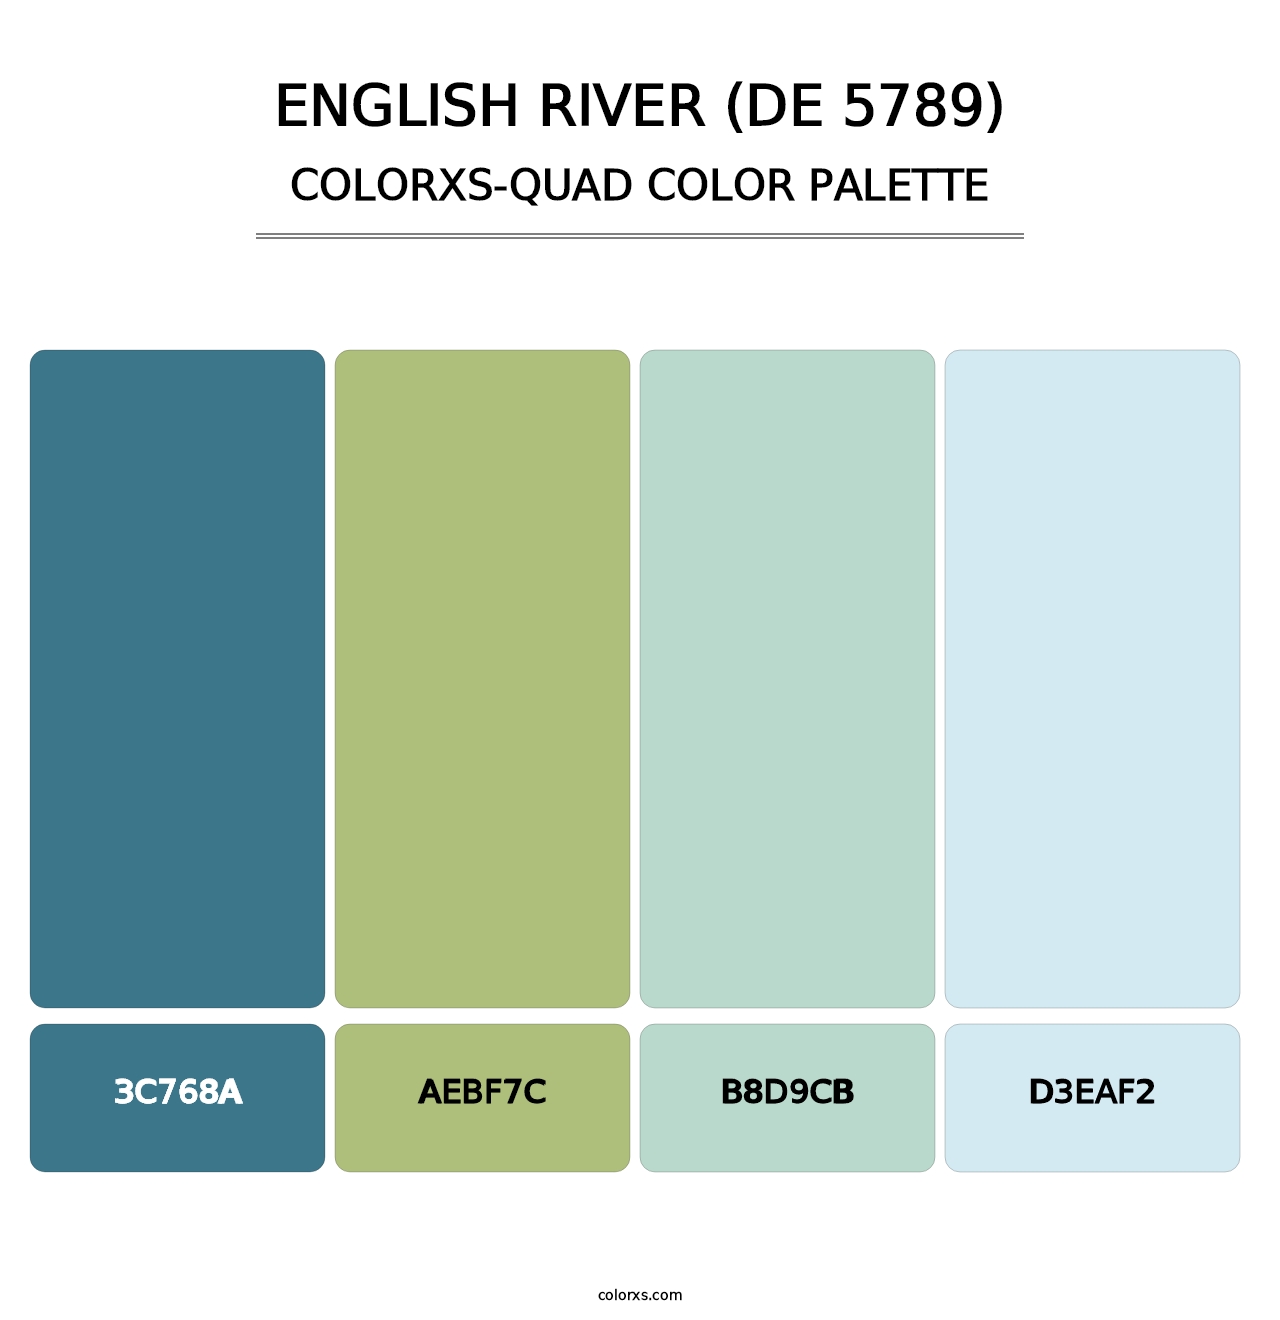 English River (DE 5789) - Colorxs Quad Palette